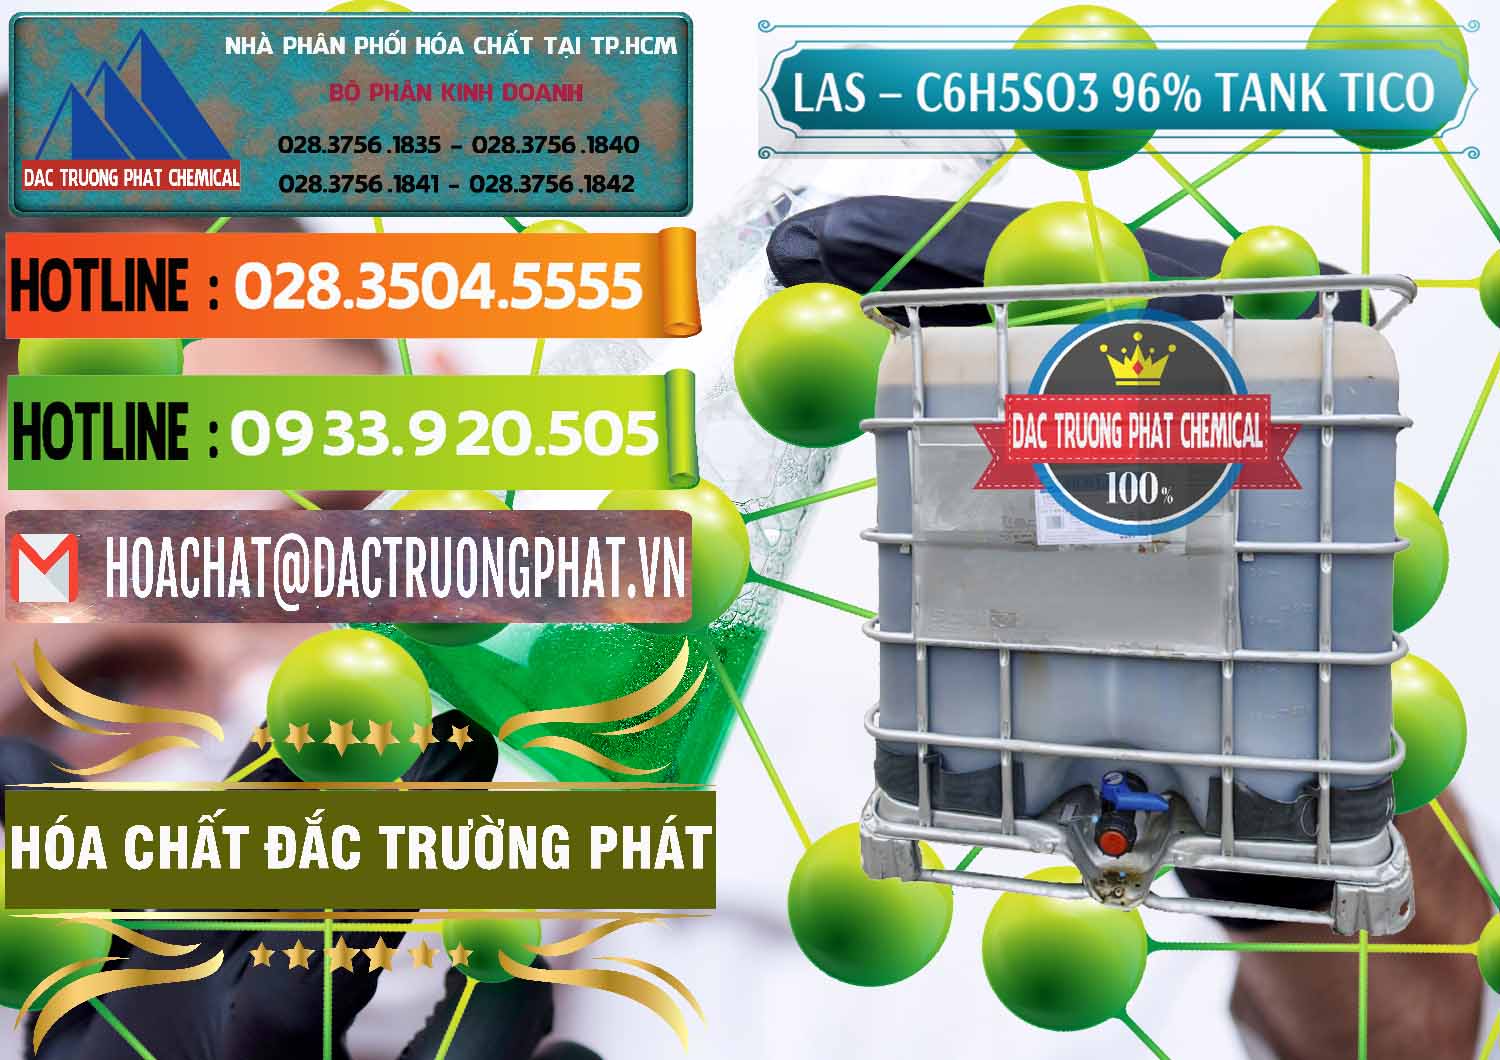 Cty bán ( cung ứng ) Chất tạo bọt Las P Tico Tank IBC Bồn Việt Nam - 0488 - Cty chuyên cung cấp _ nhập khẩu hóa chất tại TP.HCM - cungcaphoachat.com.vn